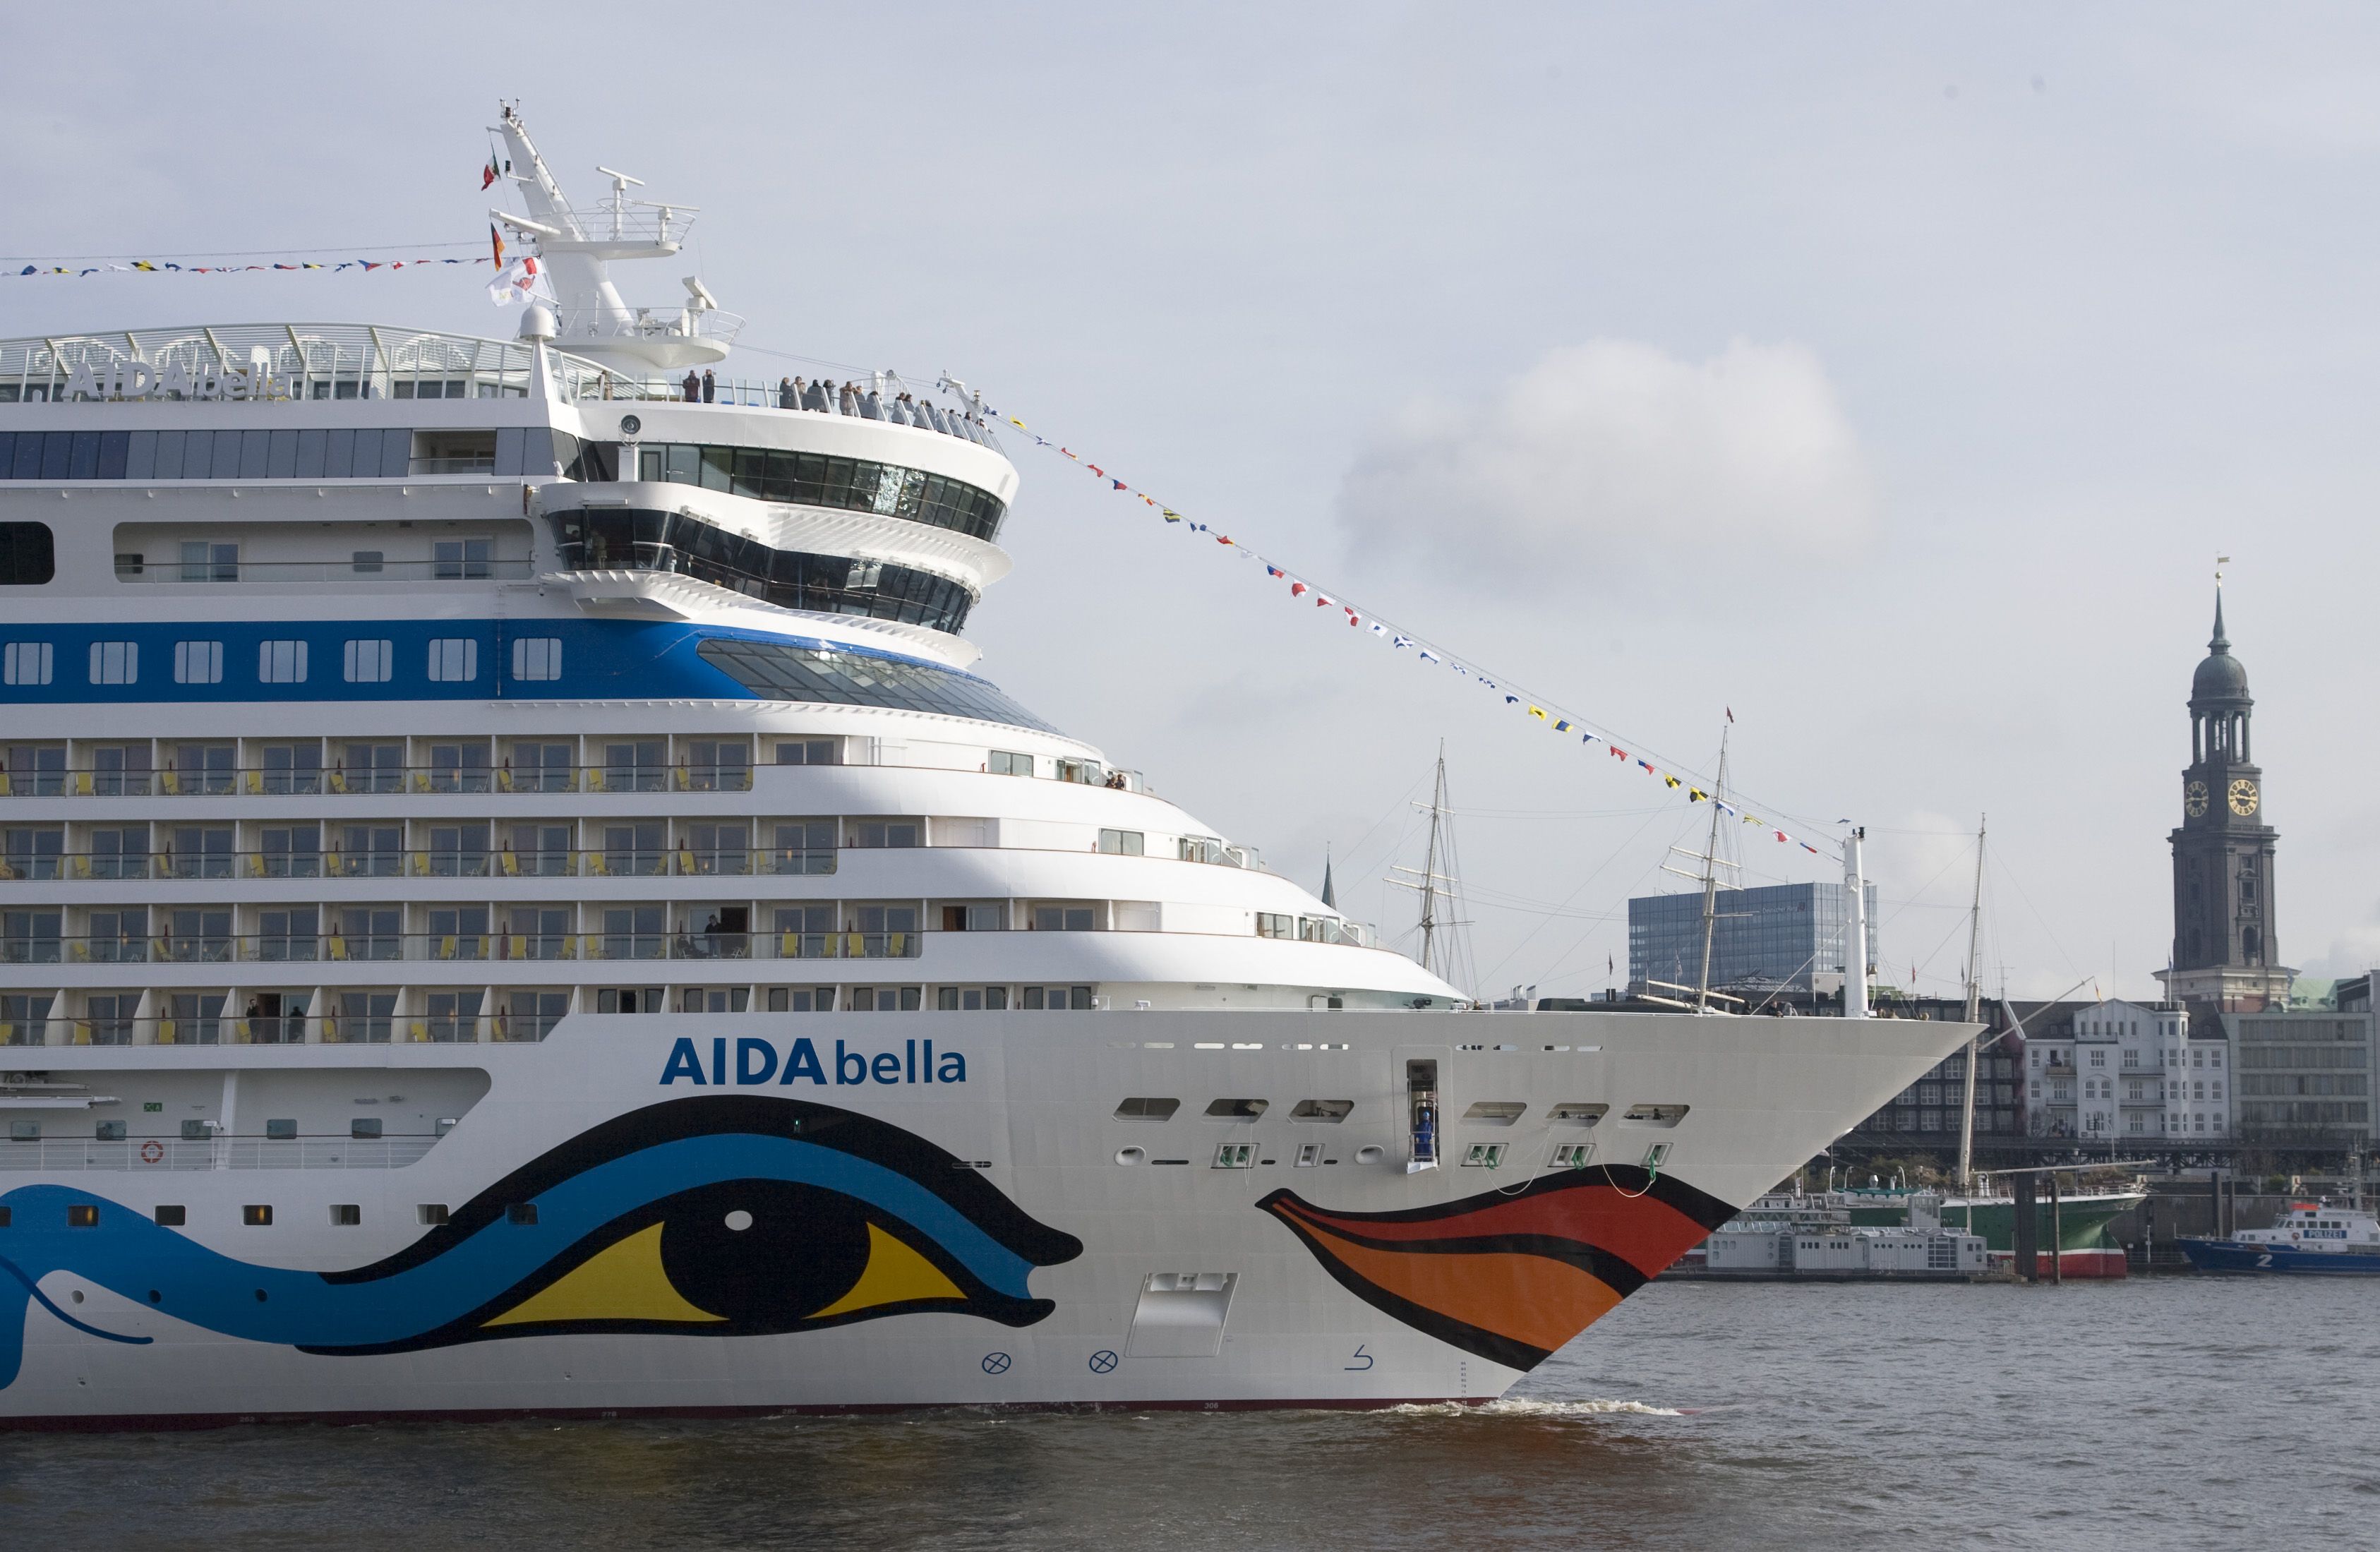 Immer mehr Kreuzfahrtschiffe kommen nach Hamburg (Foto: Aida Bella)